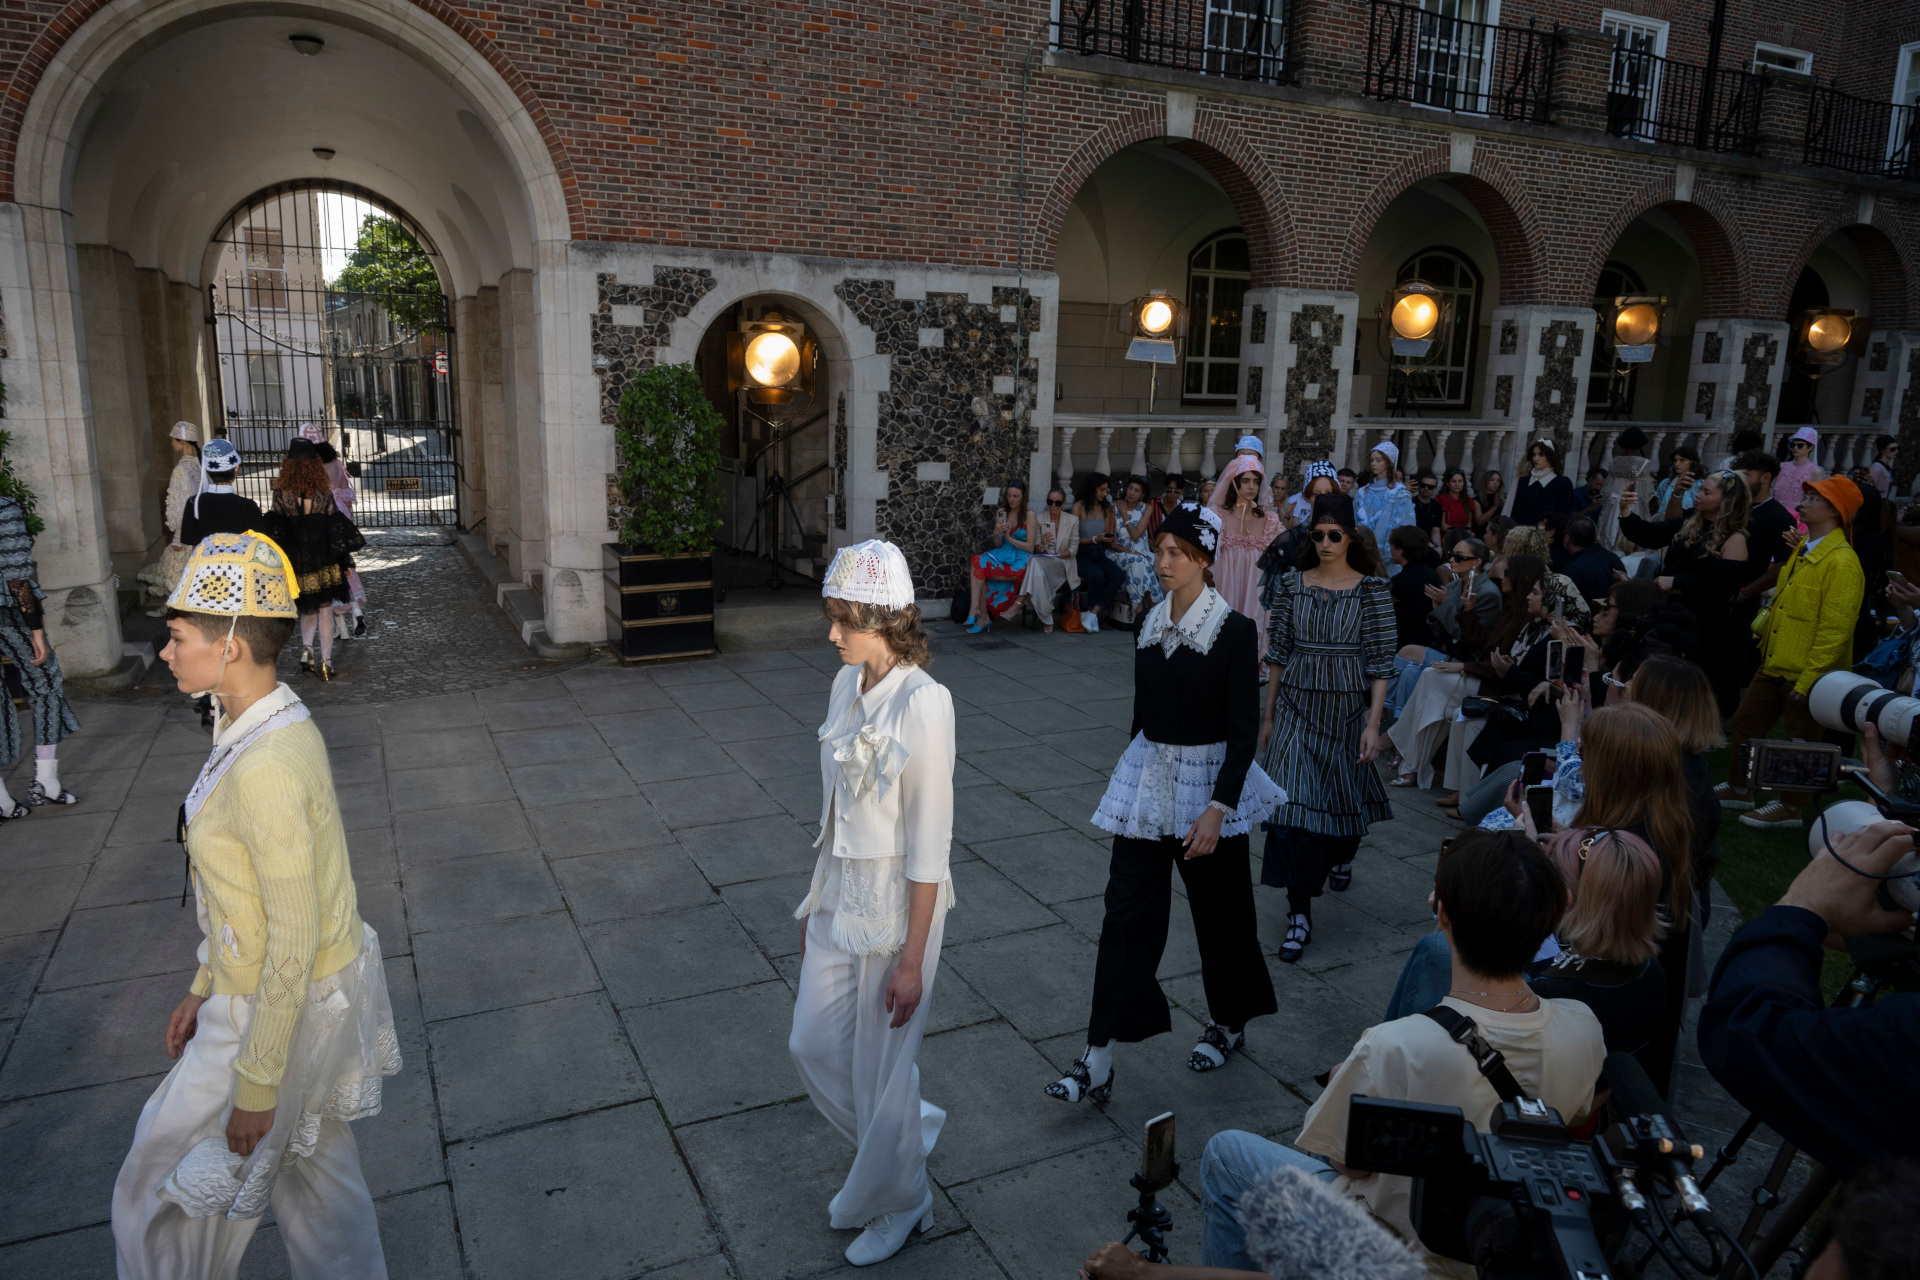 Models walking around courtyard at fashion week